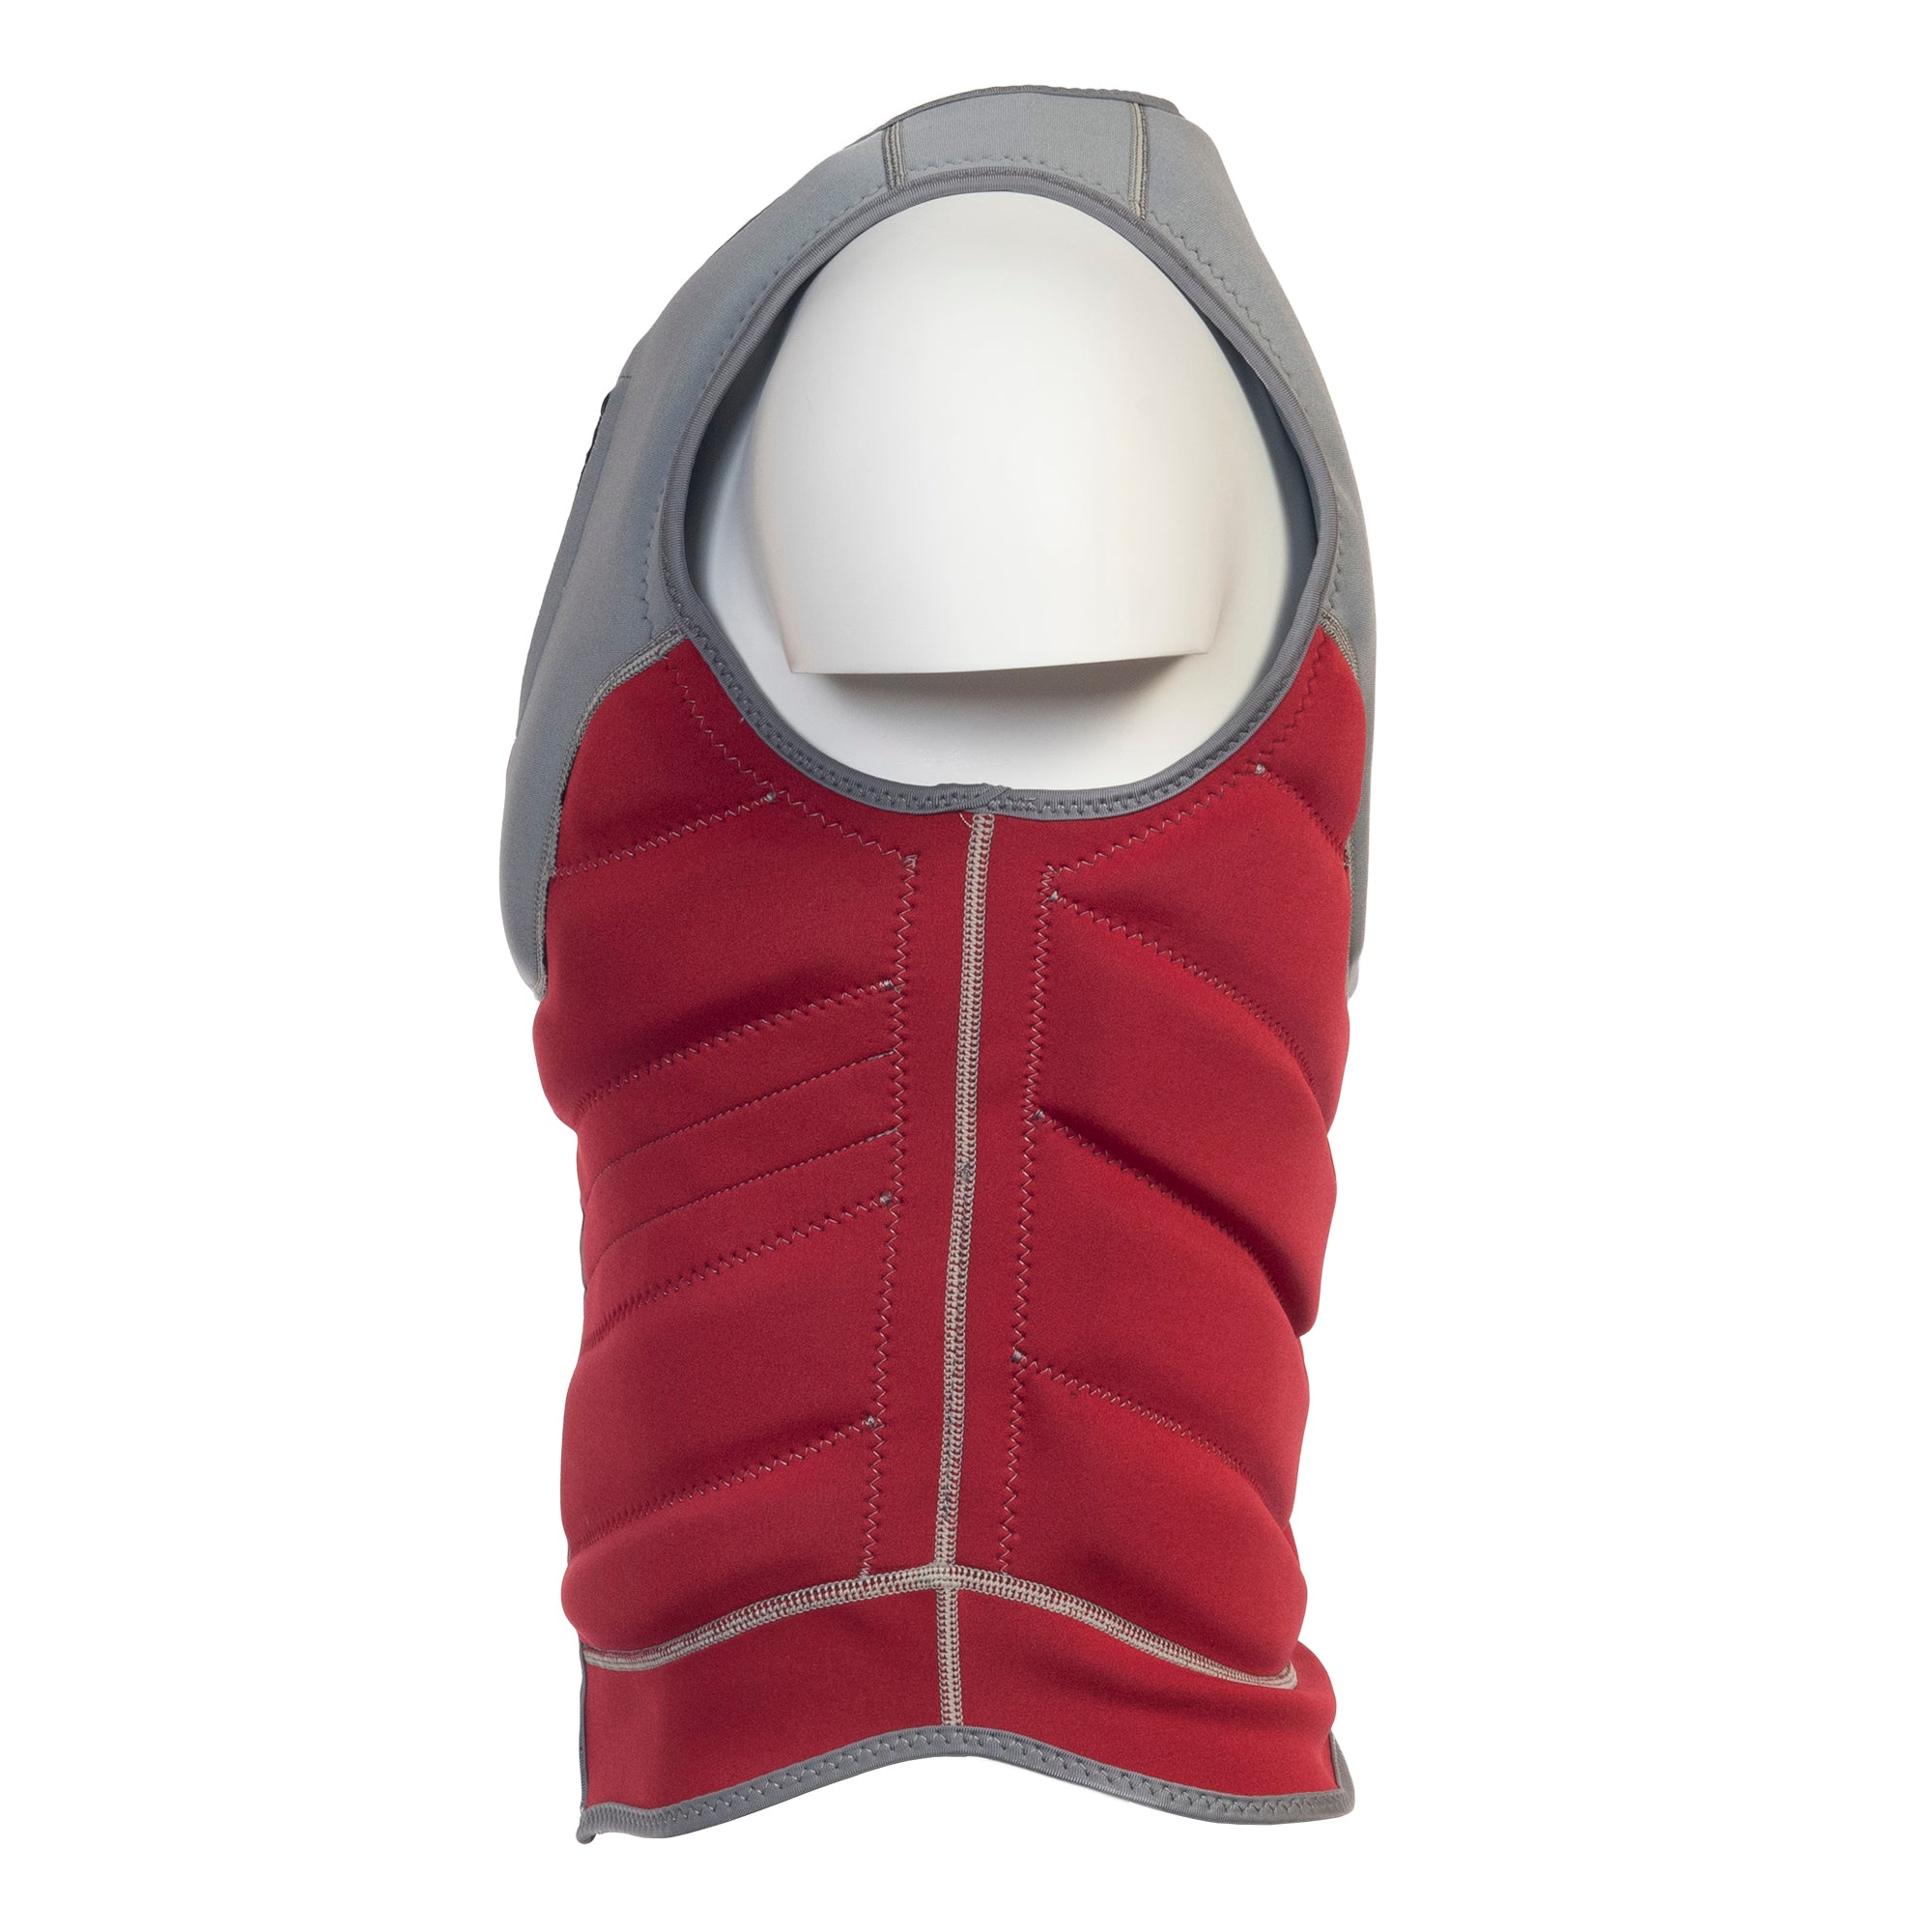 SWELL Comp Vest - Men's Red -  Neoprene Jacket - SWELL Wakesurf